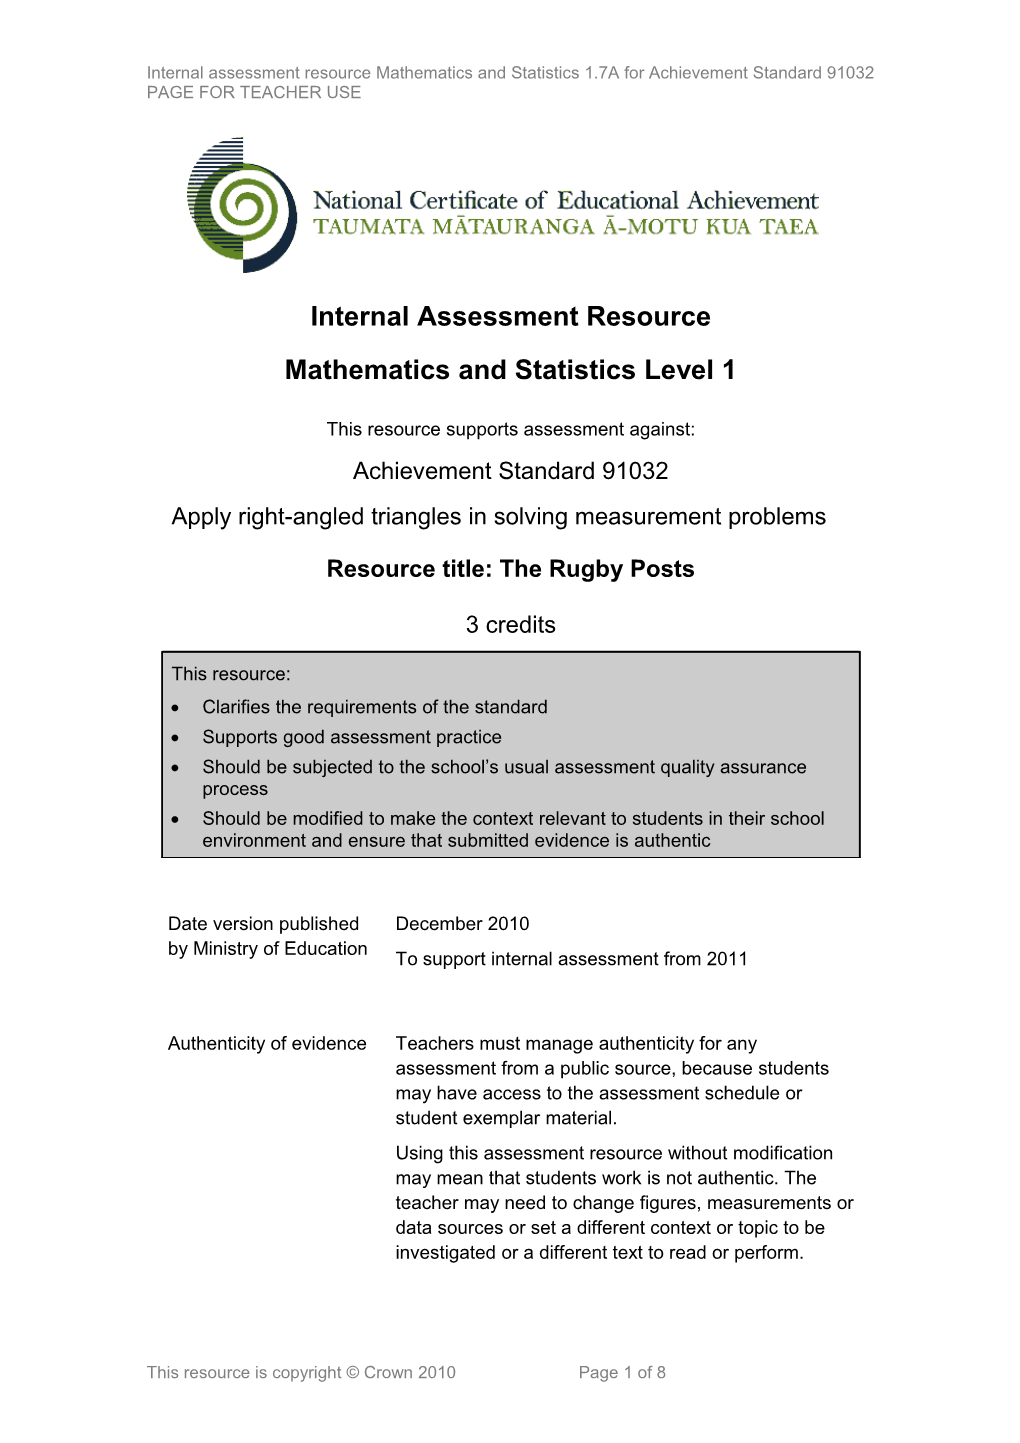 Level 1 Mathematics & Statistics Internal Assessment Resource